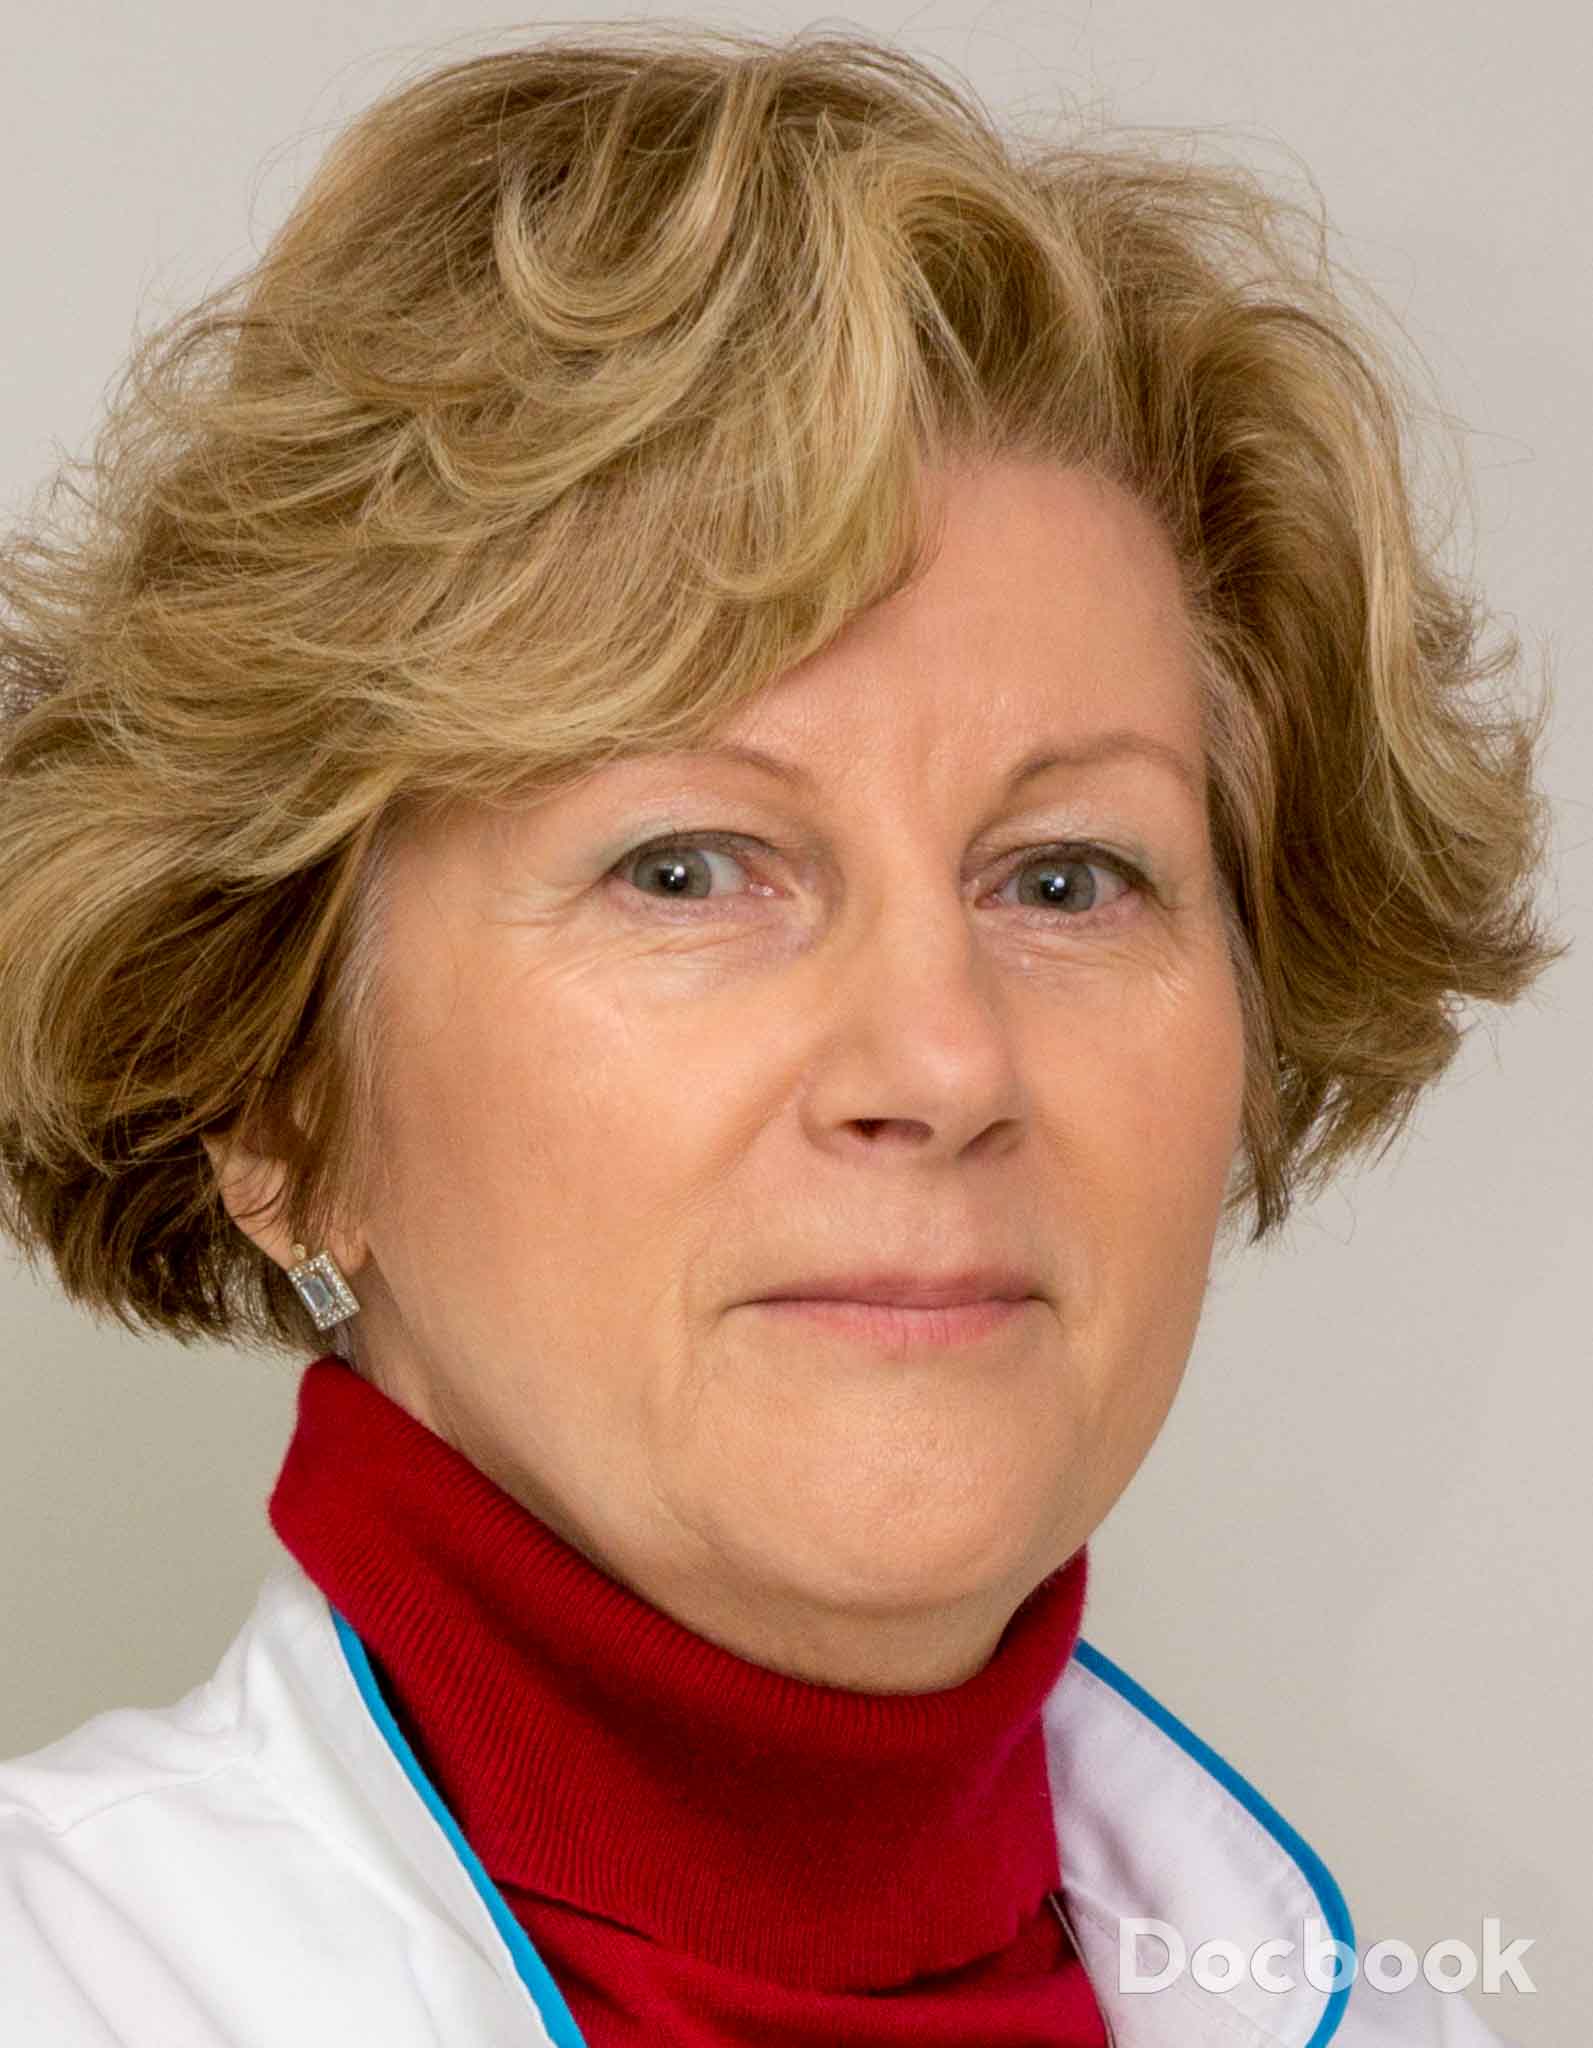 Dr. Vladescu Ruxandra